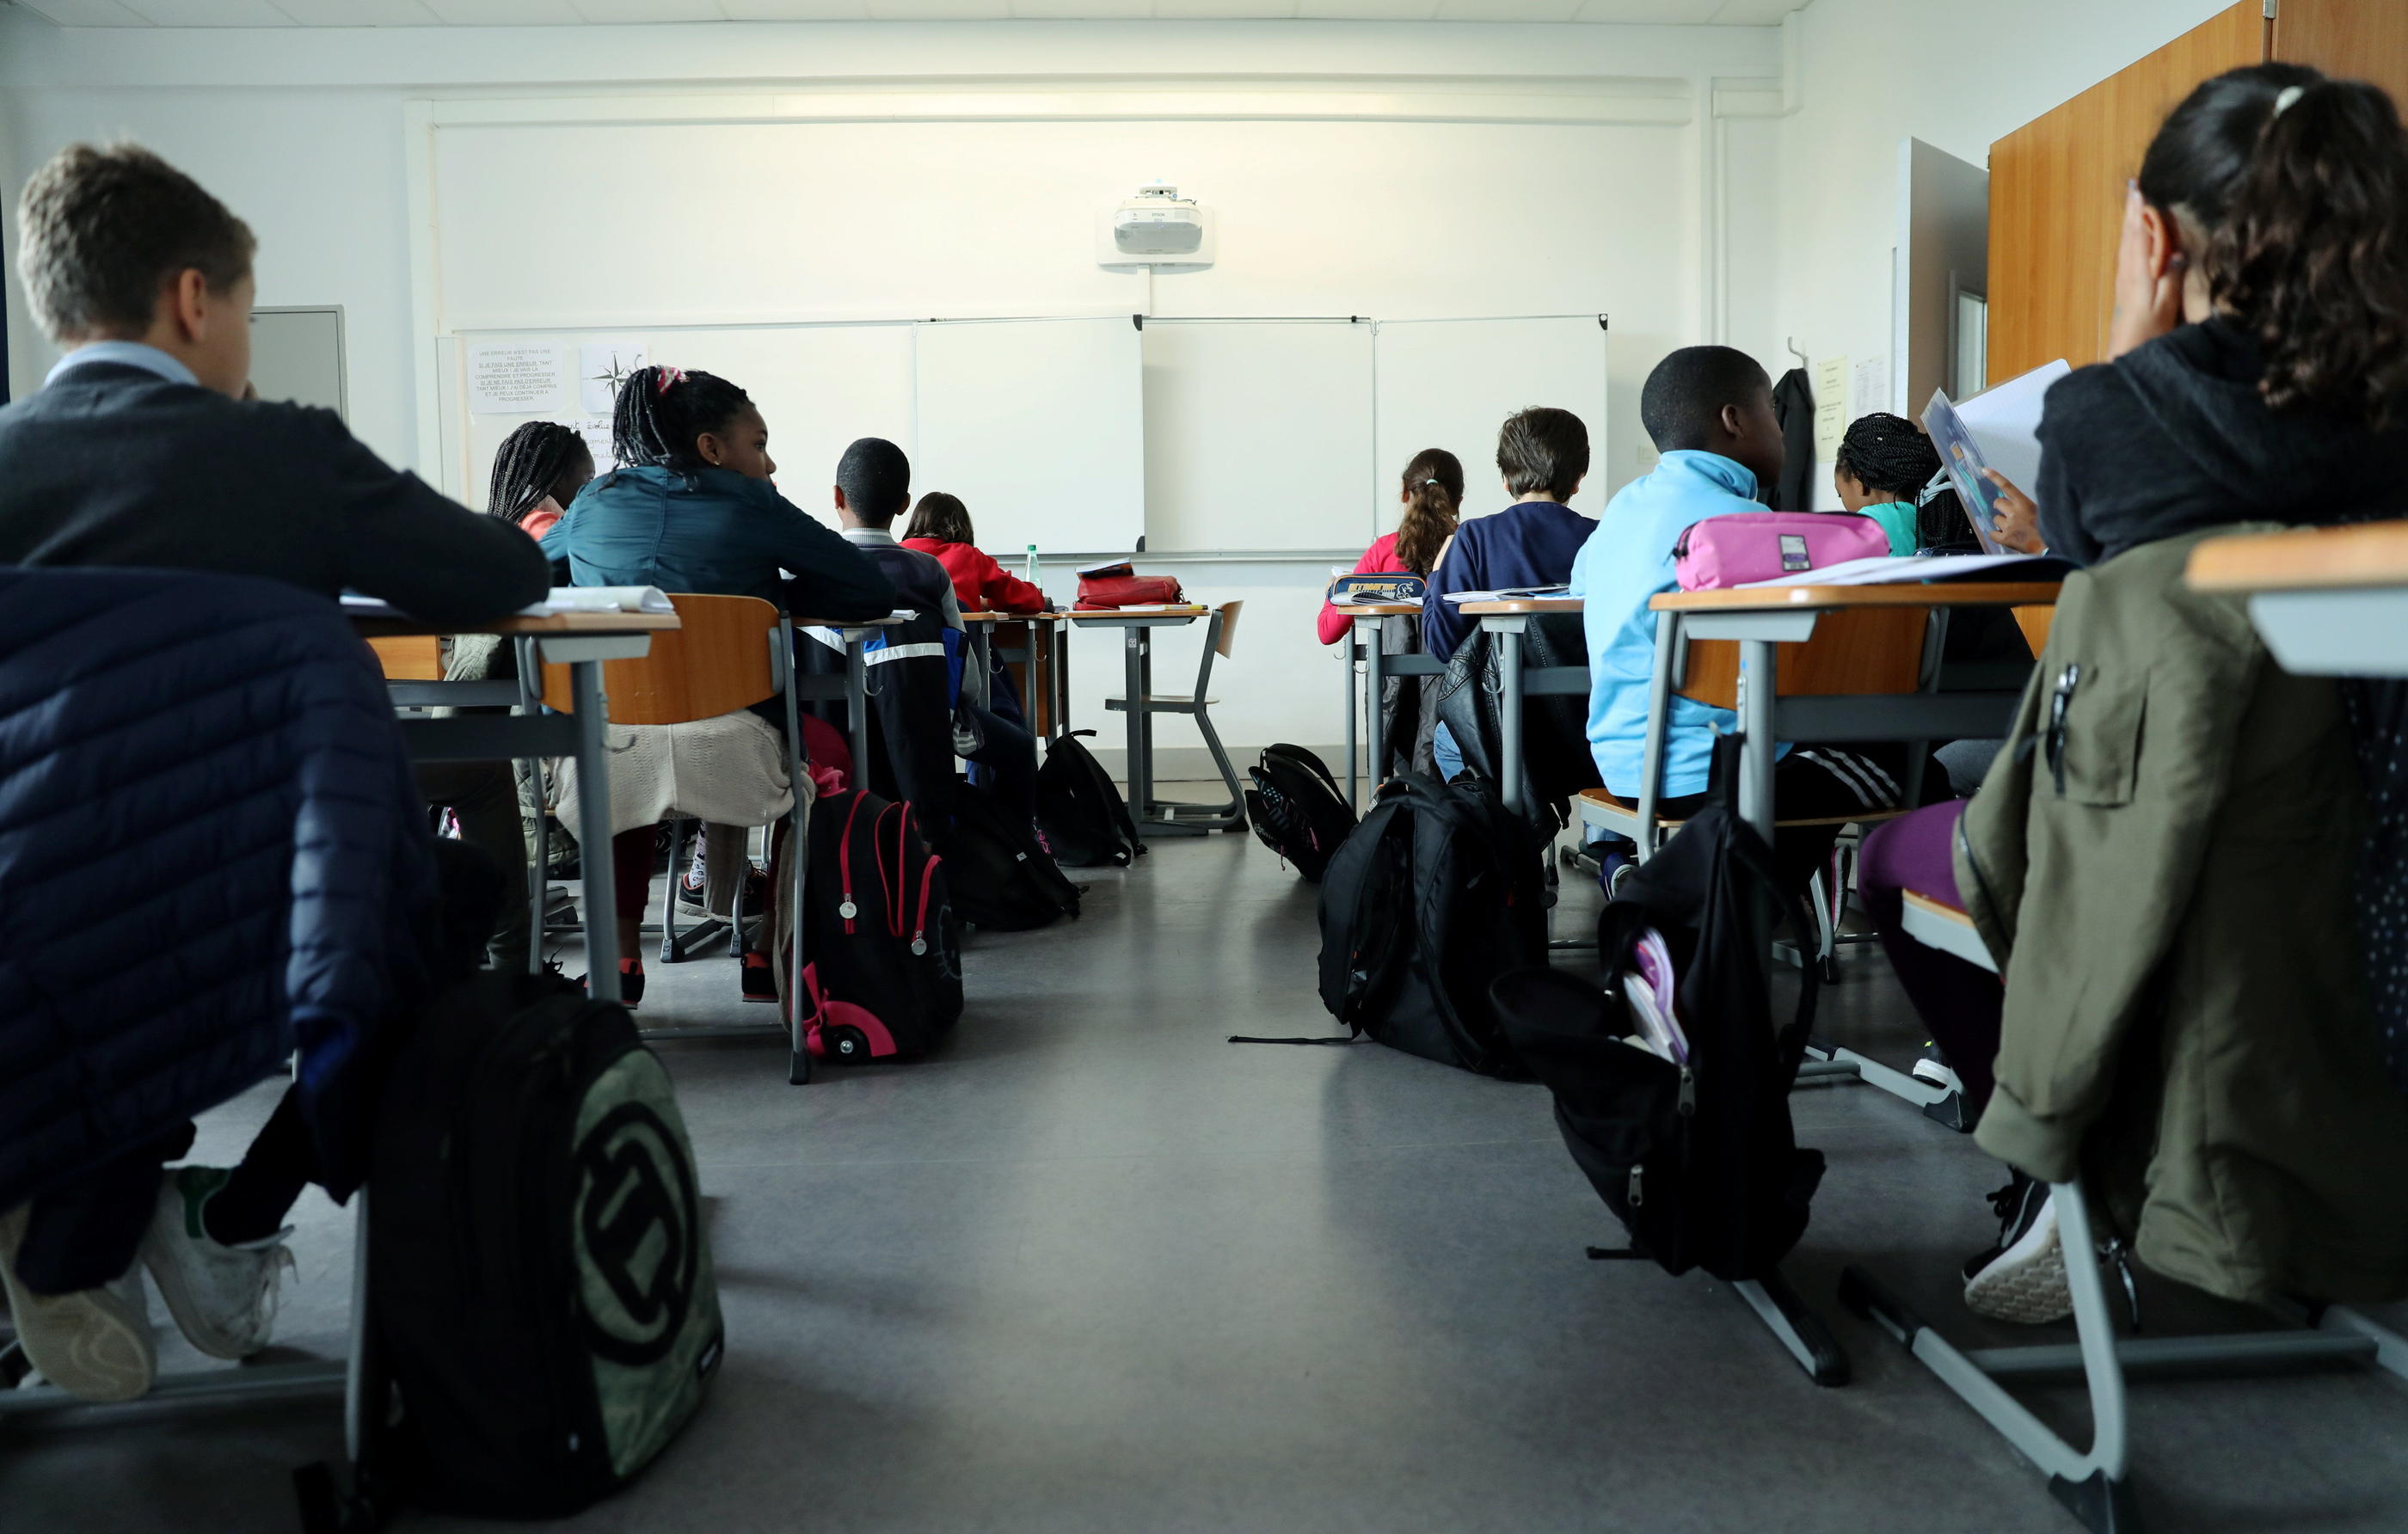 Si la satisfaction des élèves français se trouve dans la moyenne, le climat scolaire est davantage préoccupant, selon les tests Pisa. (Illustration) LP/Aurélie Ladet